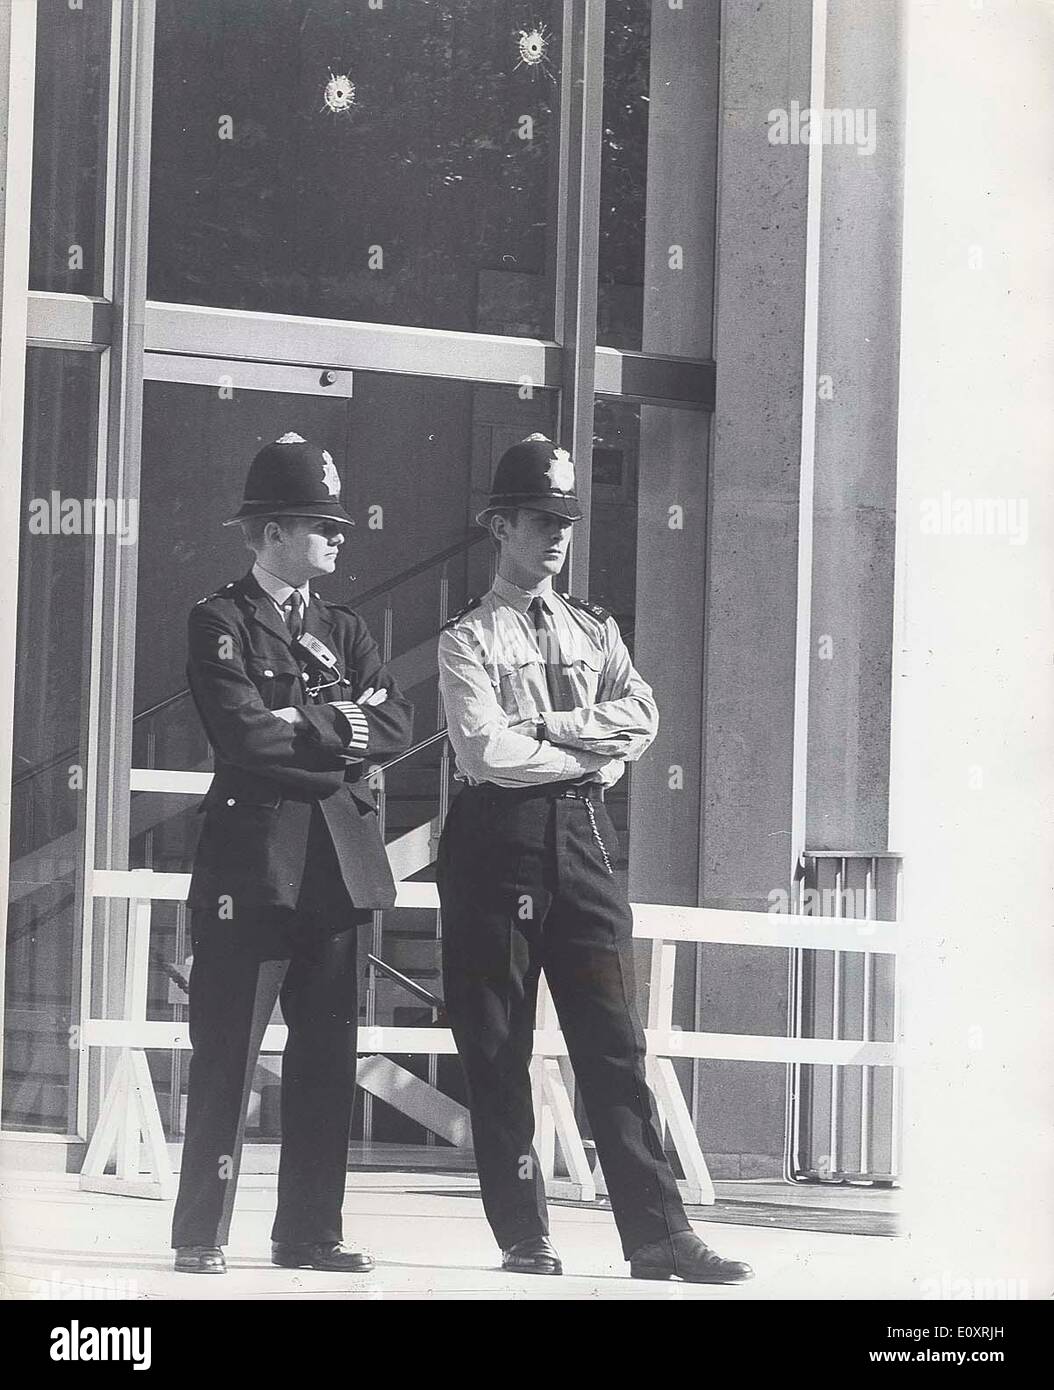 Août 21, 1967 - Londres, Angleterre, Royaume-Uni - deux policiers montent la garde à l'extérieur de l'ambassade des Etats-Unis après un homme d'armes à feu inconnu perçaient les fenêtres et portes de la plaque du fonctionnaire consulaire. Banque D'Images